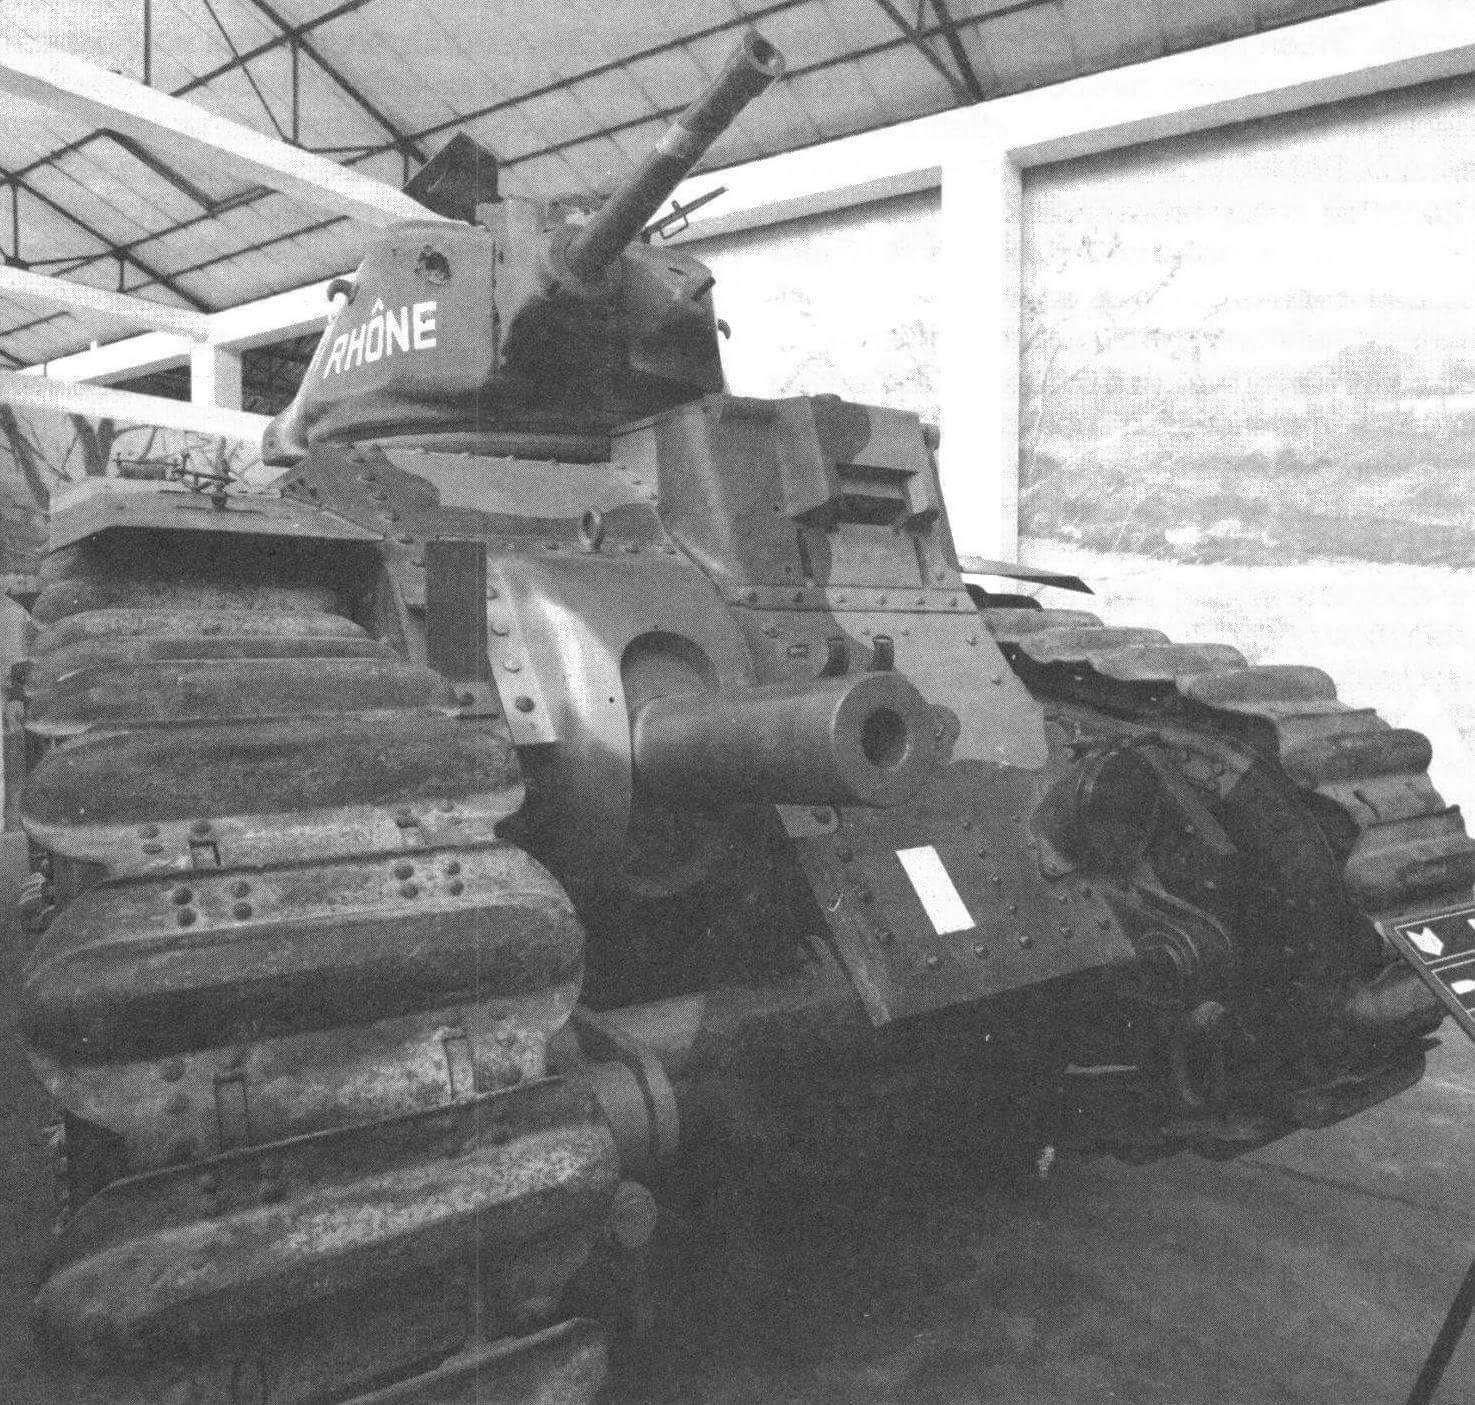 Танк B1bis из коллекции танкового музея в Самюре. Хорошо видны конструкция гусеницы и установка 75-мм пушки